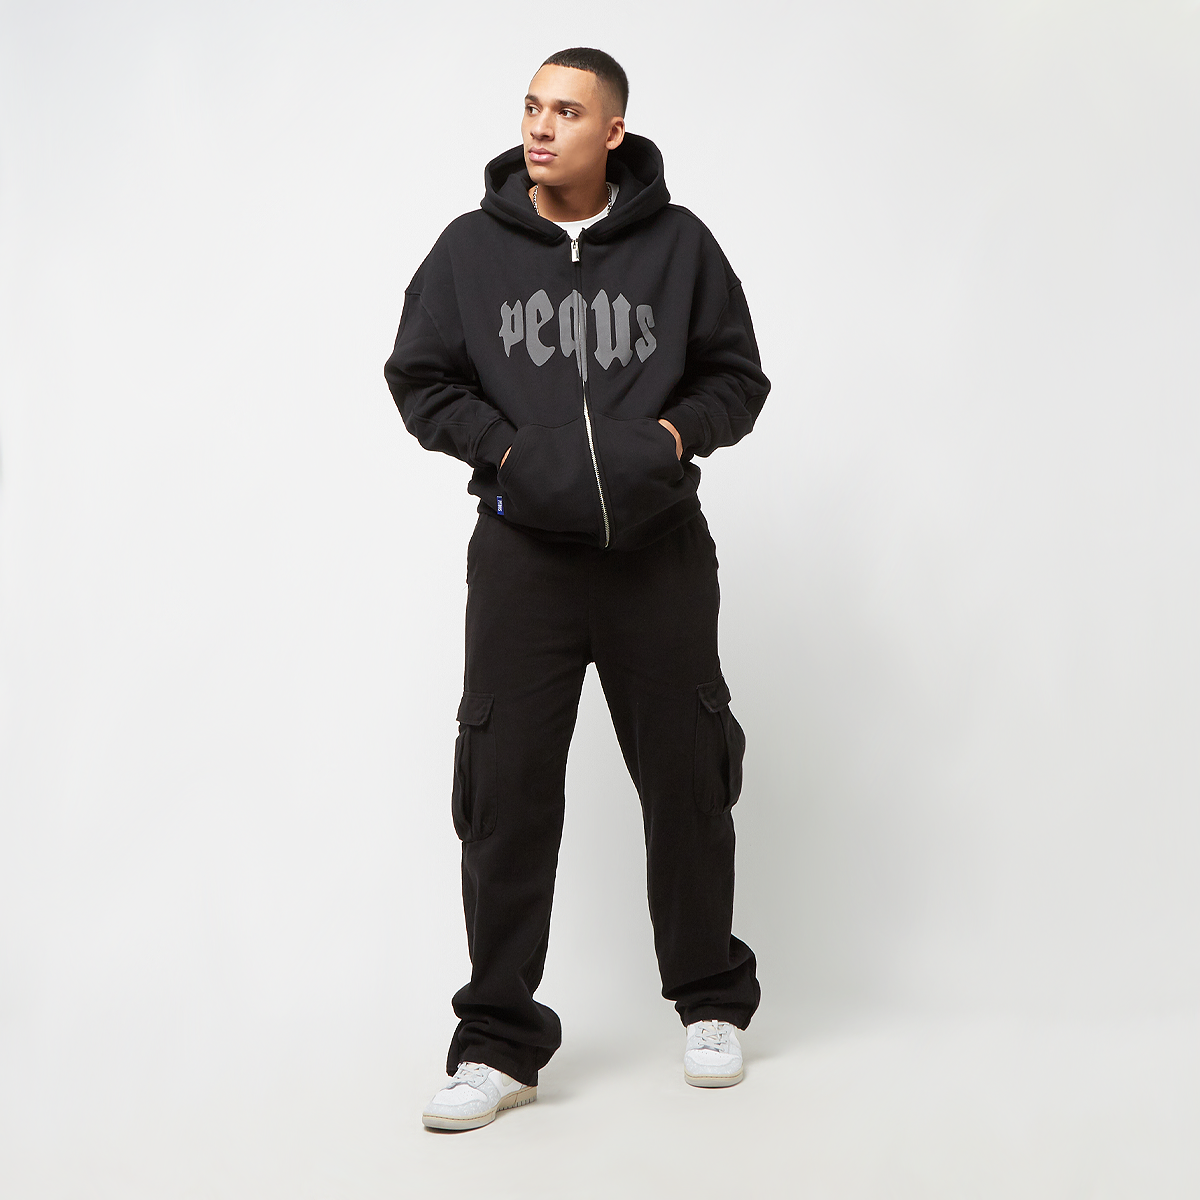 Pequs Mythic Zip-hoodie Hooded vesten Kleding Black maat: L beschikbare maaten:M L